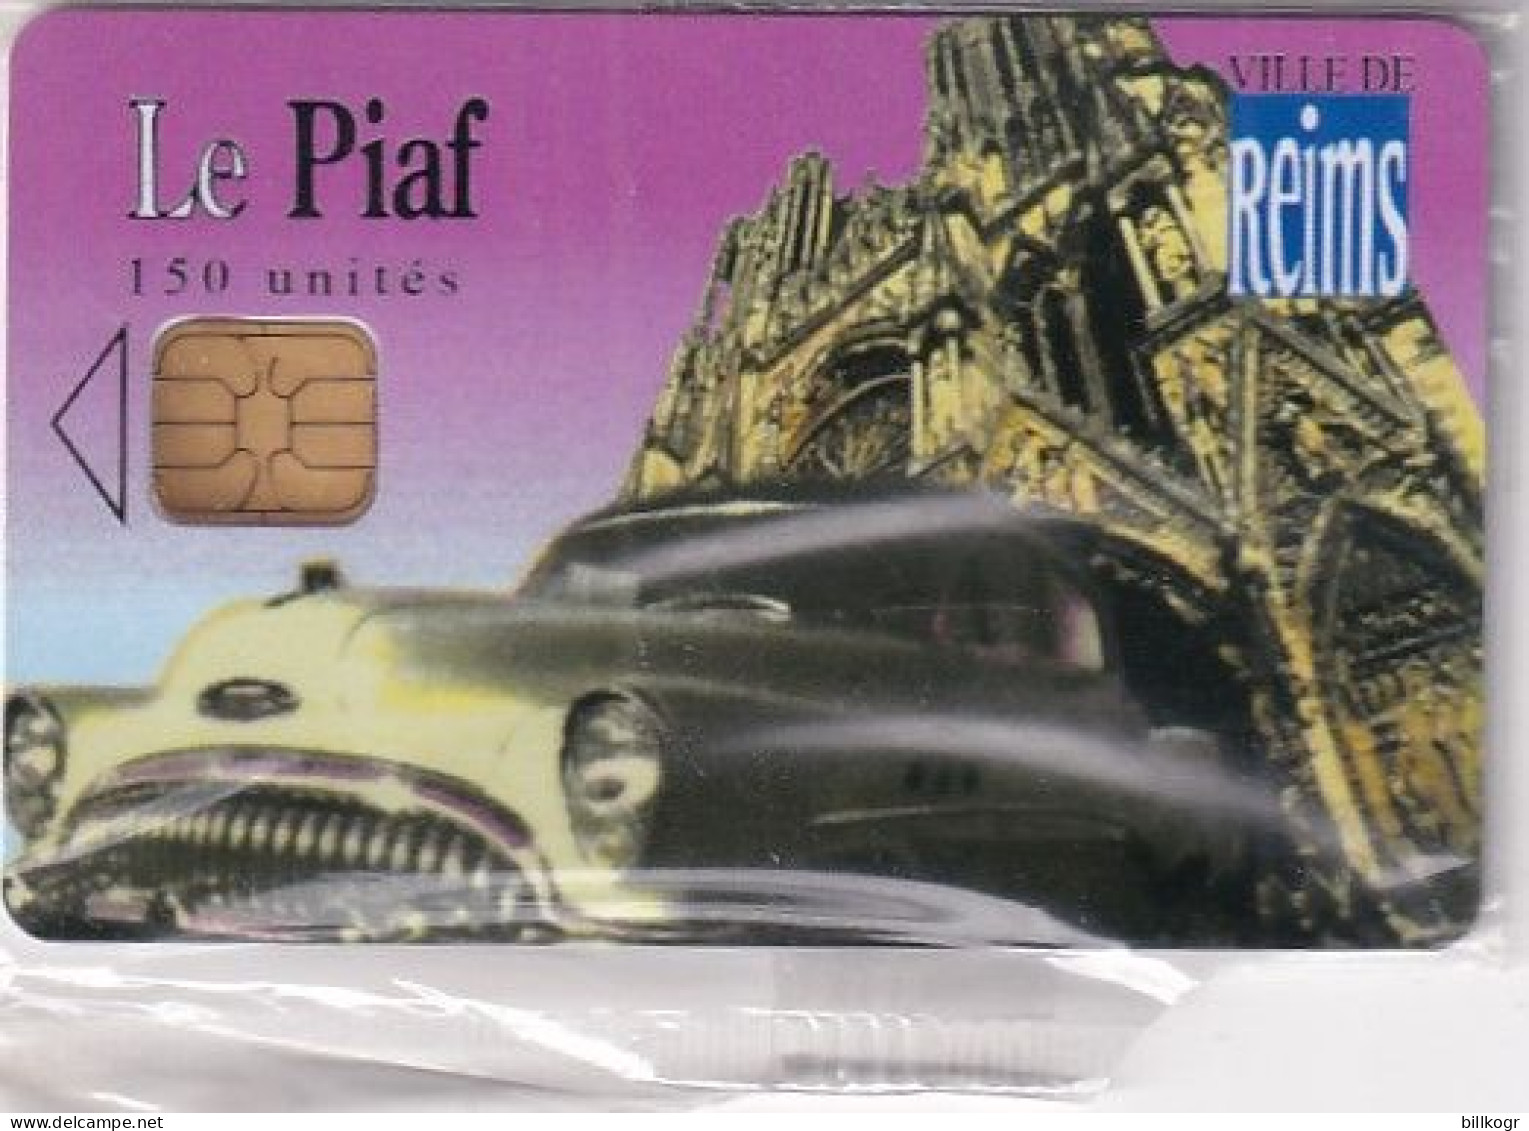 FRANCE - Le Piaf/Ville De Reims 150 Unites, Tirage 2900, 07/06, Mint - Tarjetas De Estacionamiento (PIAF)